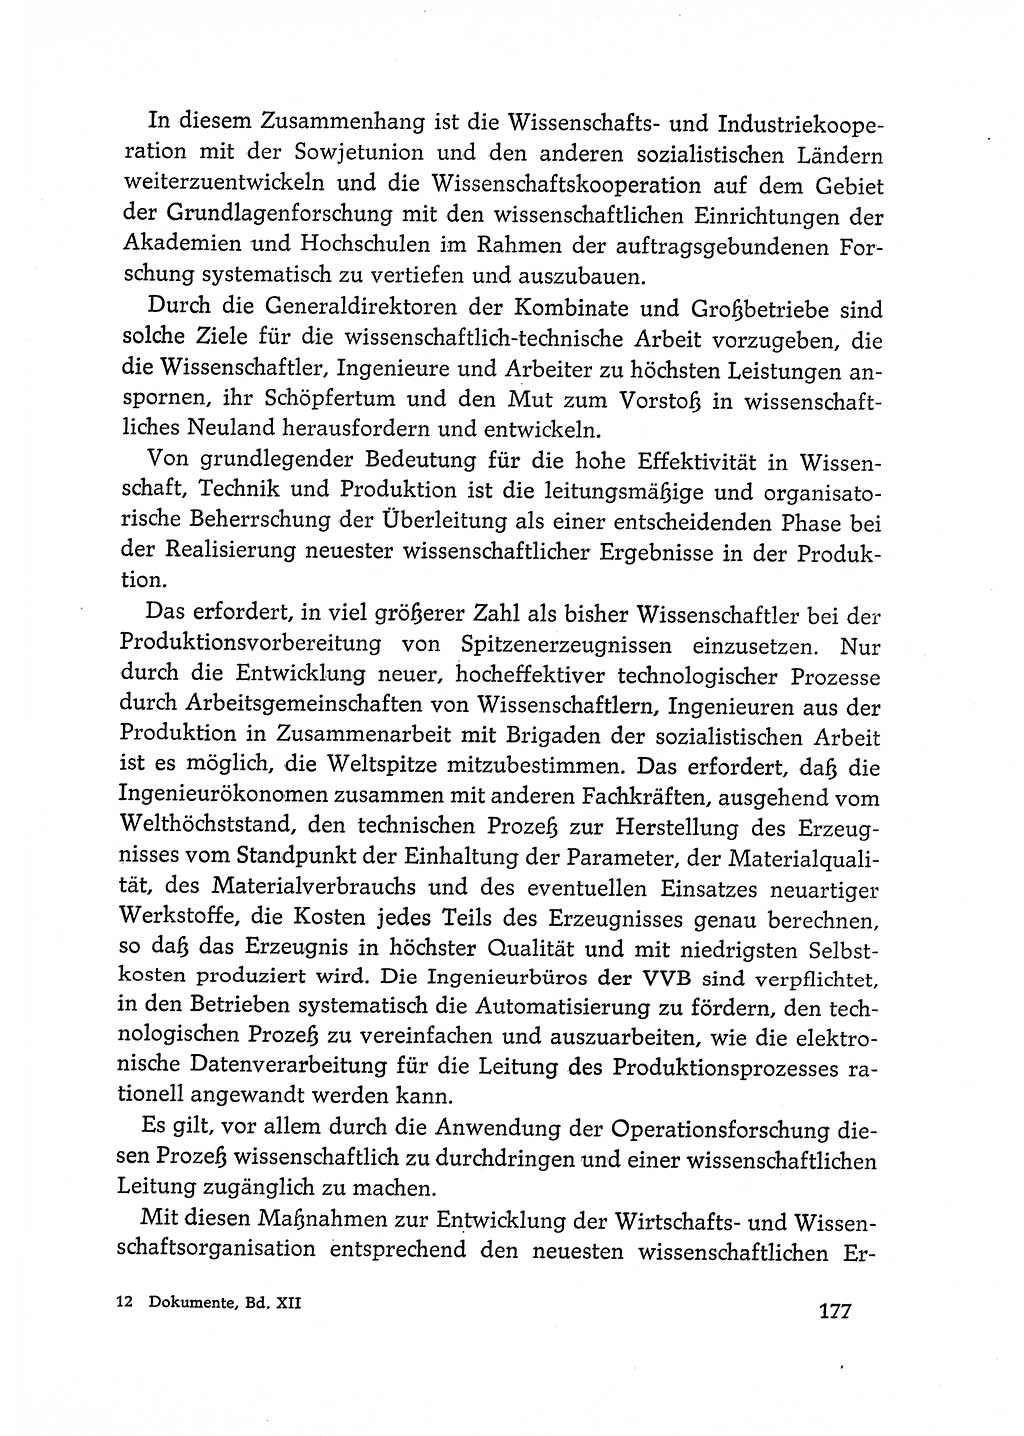 Dokumente der Sozialistischen Einheitspartei Deutschlands (SED) [Deutsche Demokratische Republik (DDR)] 1968-1969, Seite 177 (Dok. SED DDR 1968-1969, S. 177)